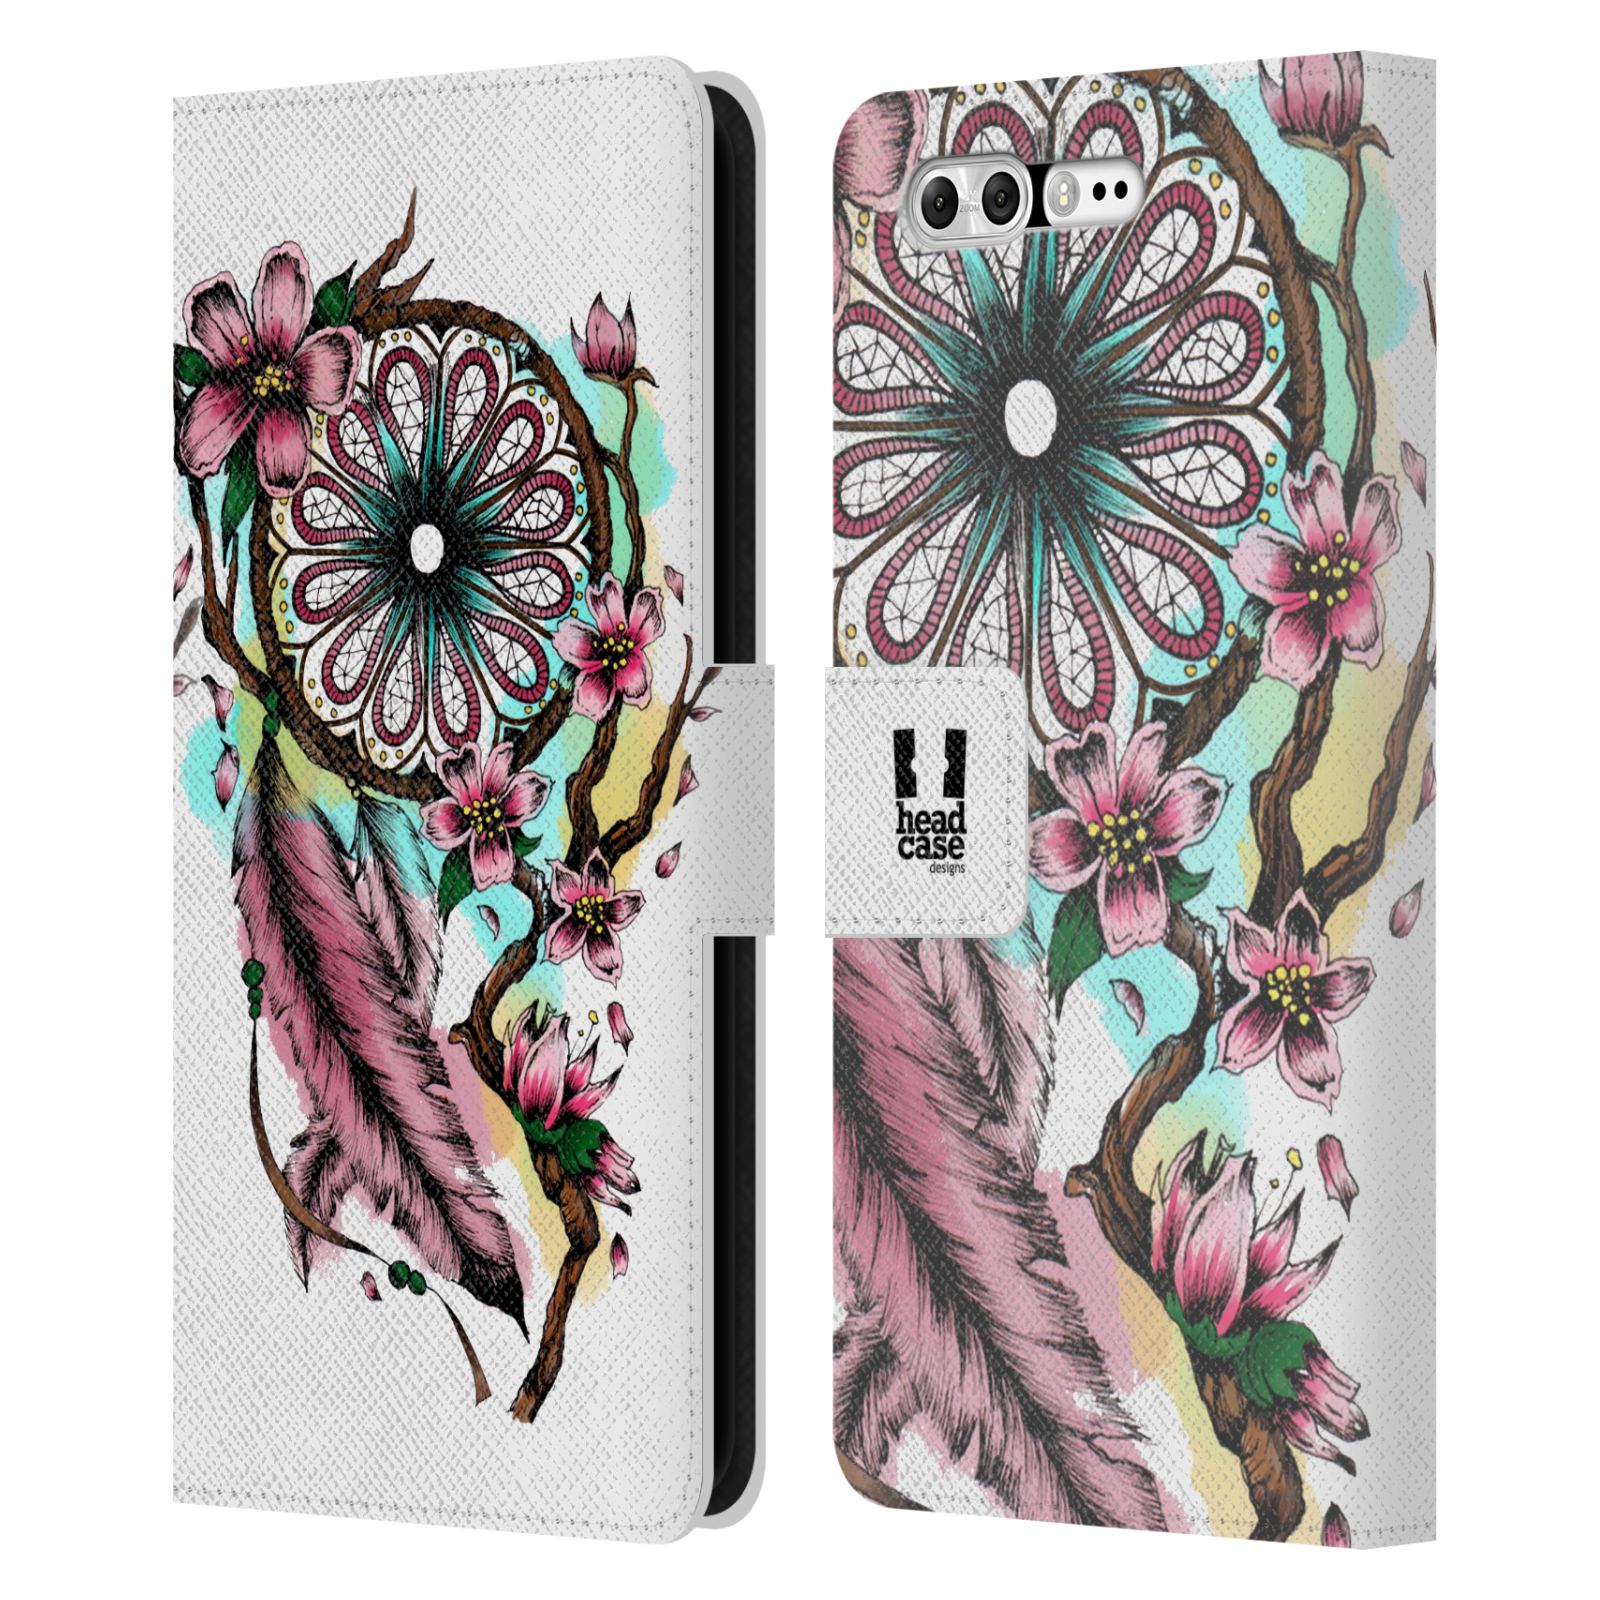 Pouzdro na mobil Asus Zenfone 4 Pro ZS551KL - Head Case - Lapač snů květy fialová